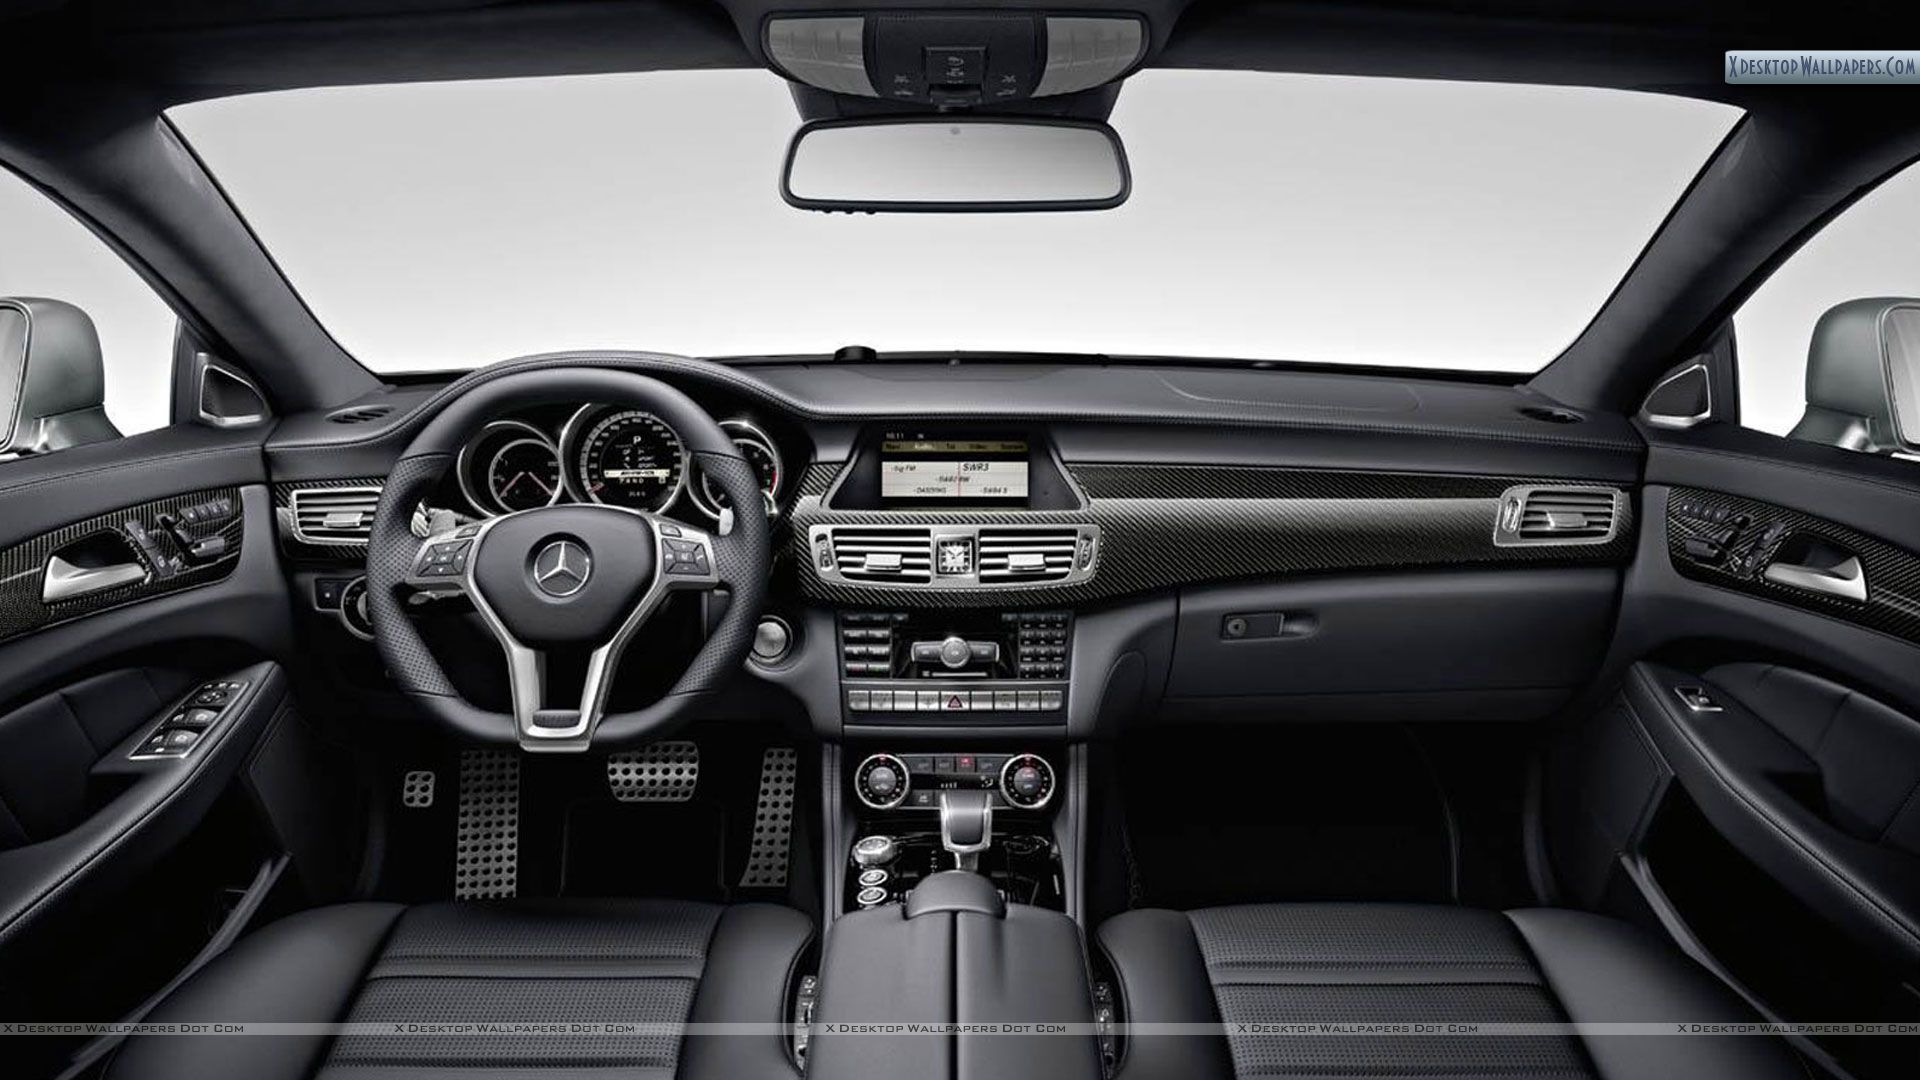 Mercedes Benz CLS63 AMG Interior Shoot Wallpaper